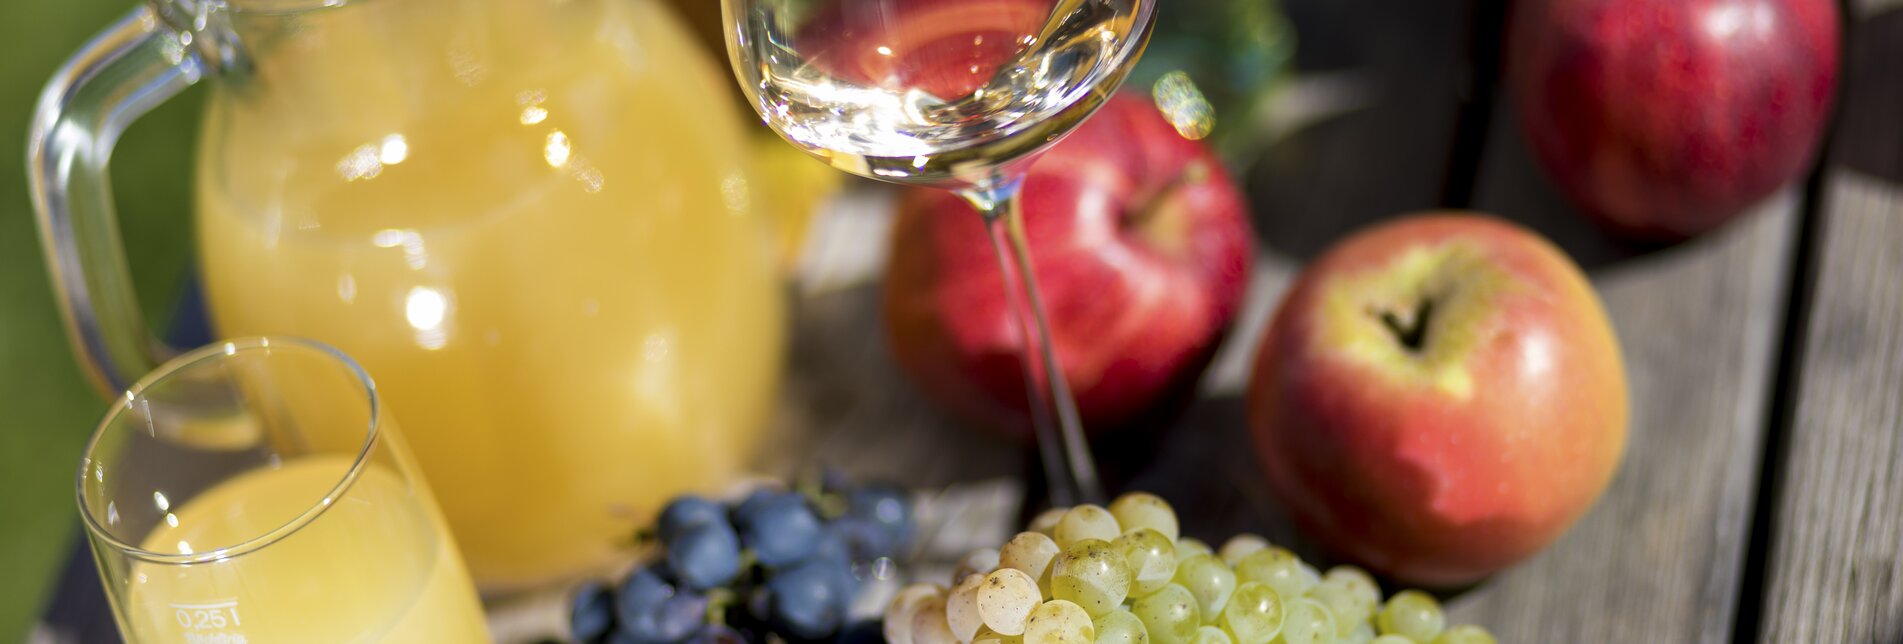 Wine, apple, pumpkin: elixirs of Styrian people. | © Steiermark Tourismus | Harry Schiffer